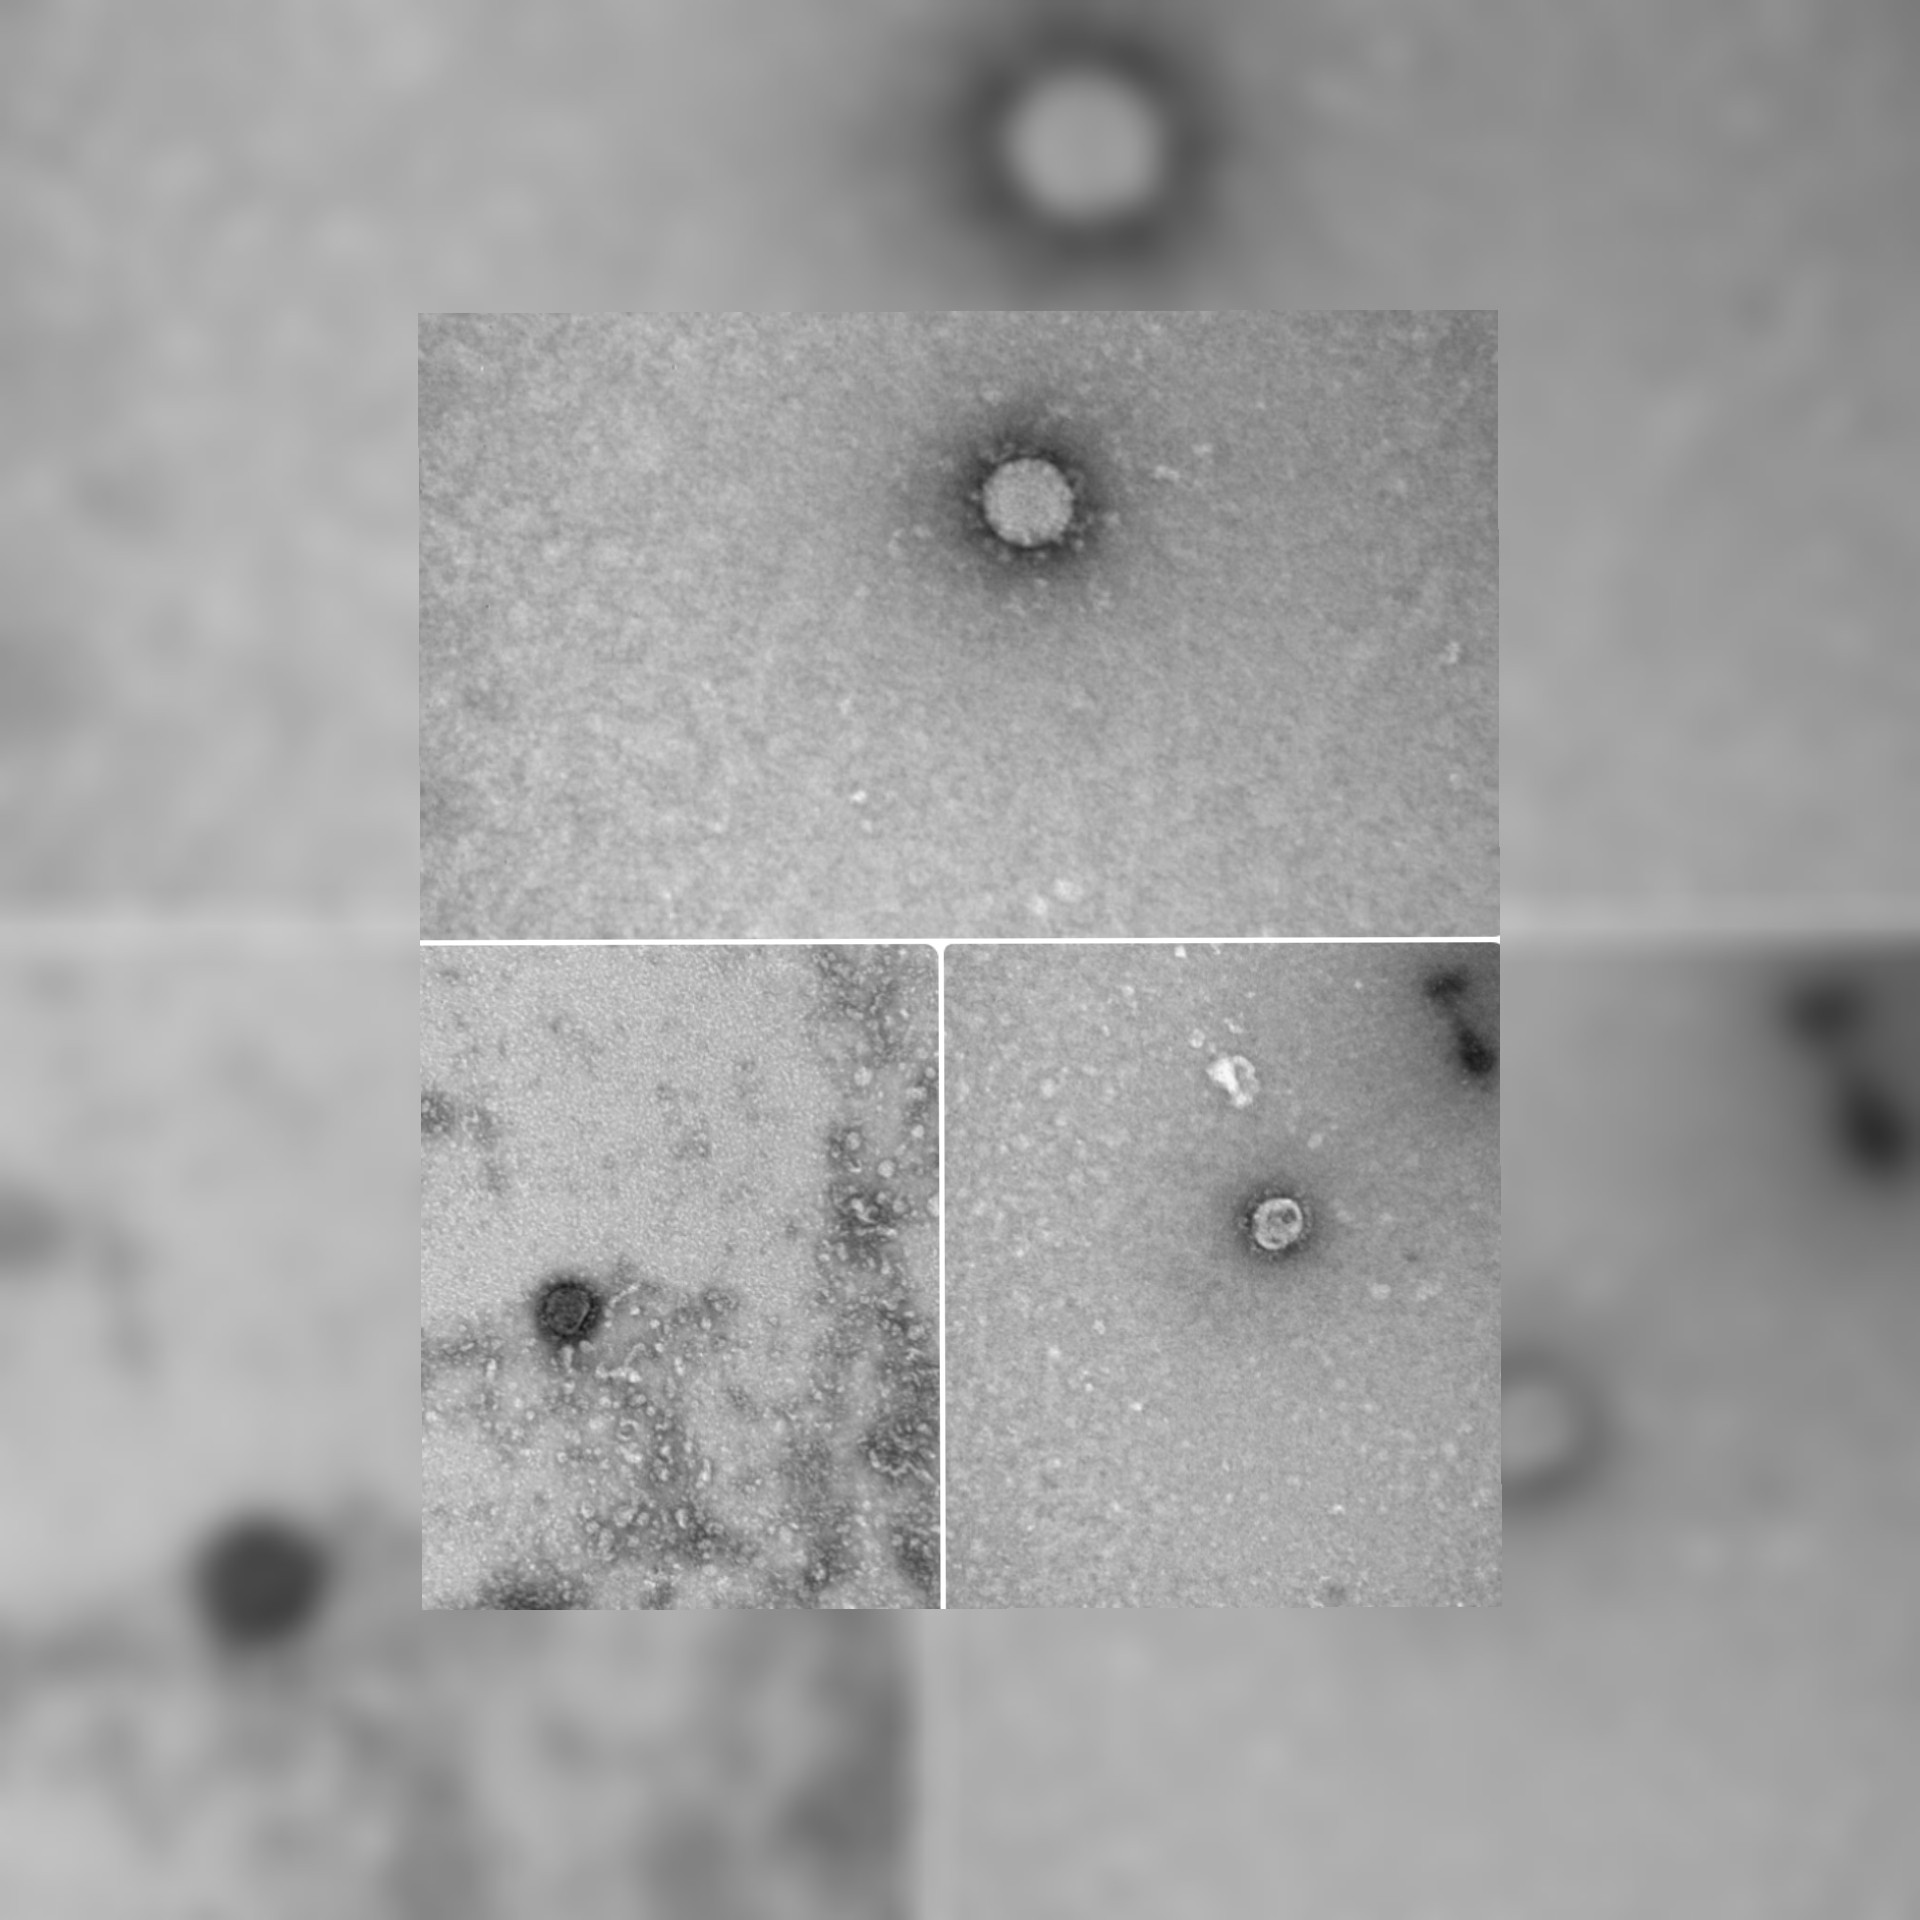 شاهد (بالفيديو)  احدث صور لفيروس الكورونا بعد ان استطاع علماء روس من فك شيفرة جينوم الوراثي للفيروس